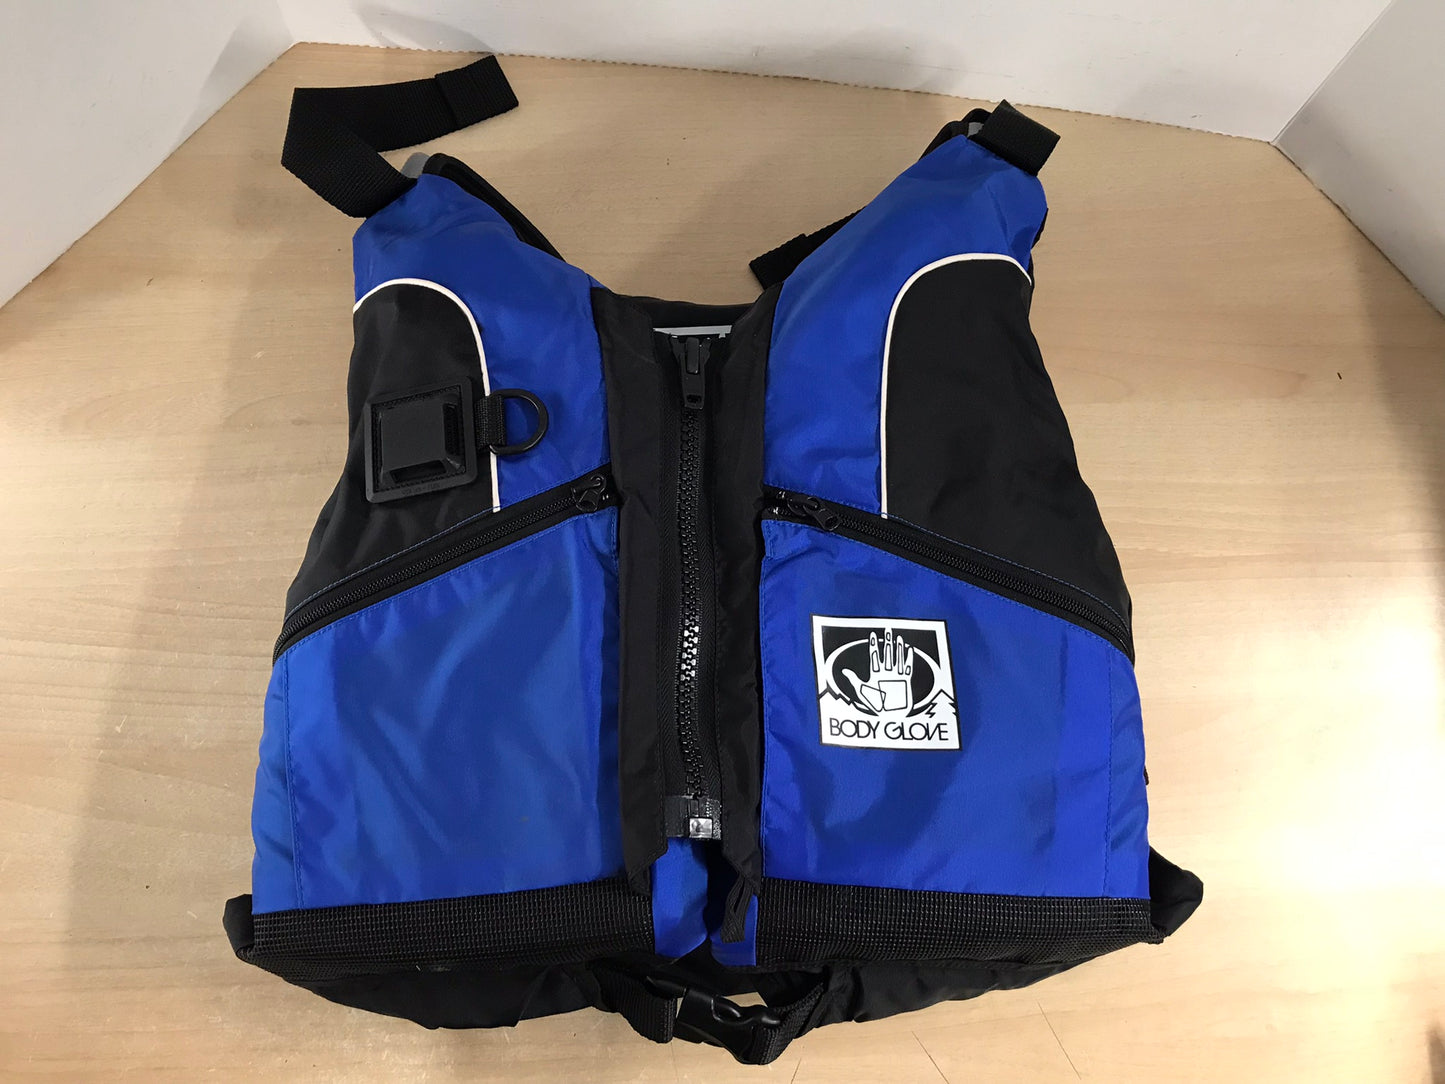 Life Jacket Adult Size Small - Medium Body Glove Black Blue Kayak Paddle Canoe New Demo Model